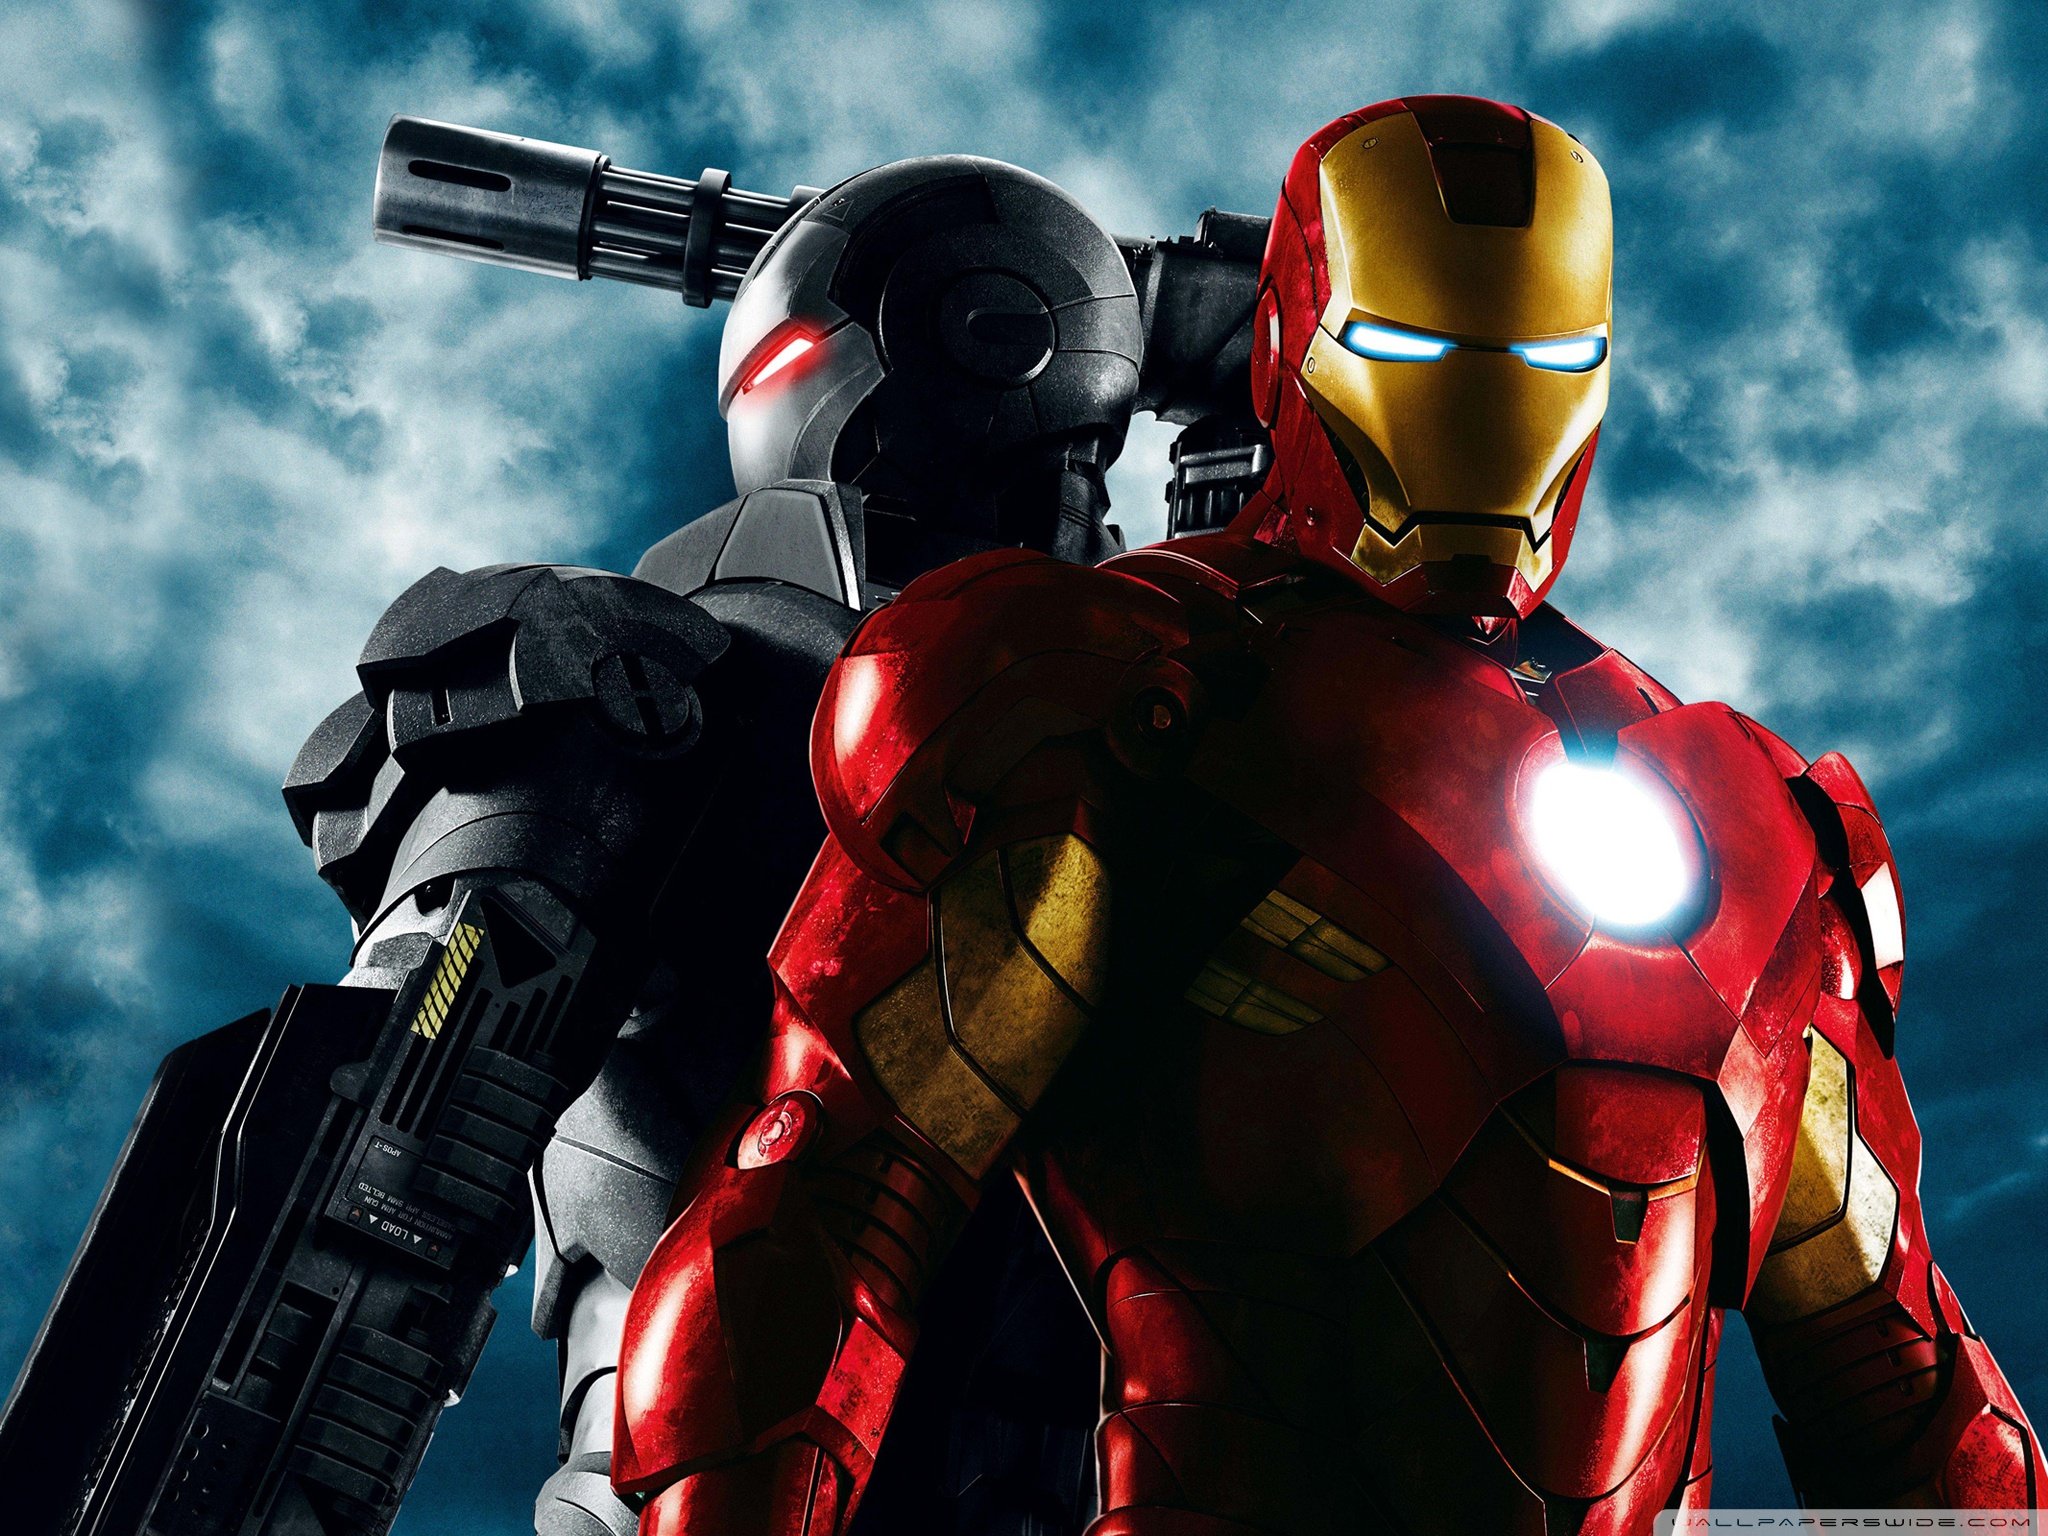 War Machine and Iron Man, Iron Man 2 Ultra HD Desktop Background Wallpaper for 4K UHD TV, Widescreen & UltraWide Desktop & Laptop, Tablet